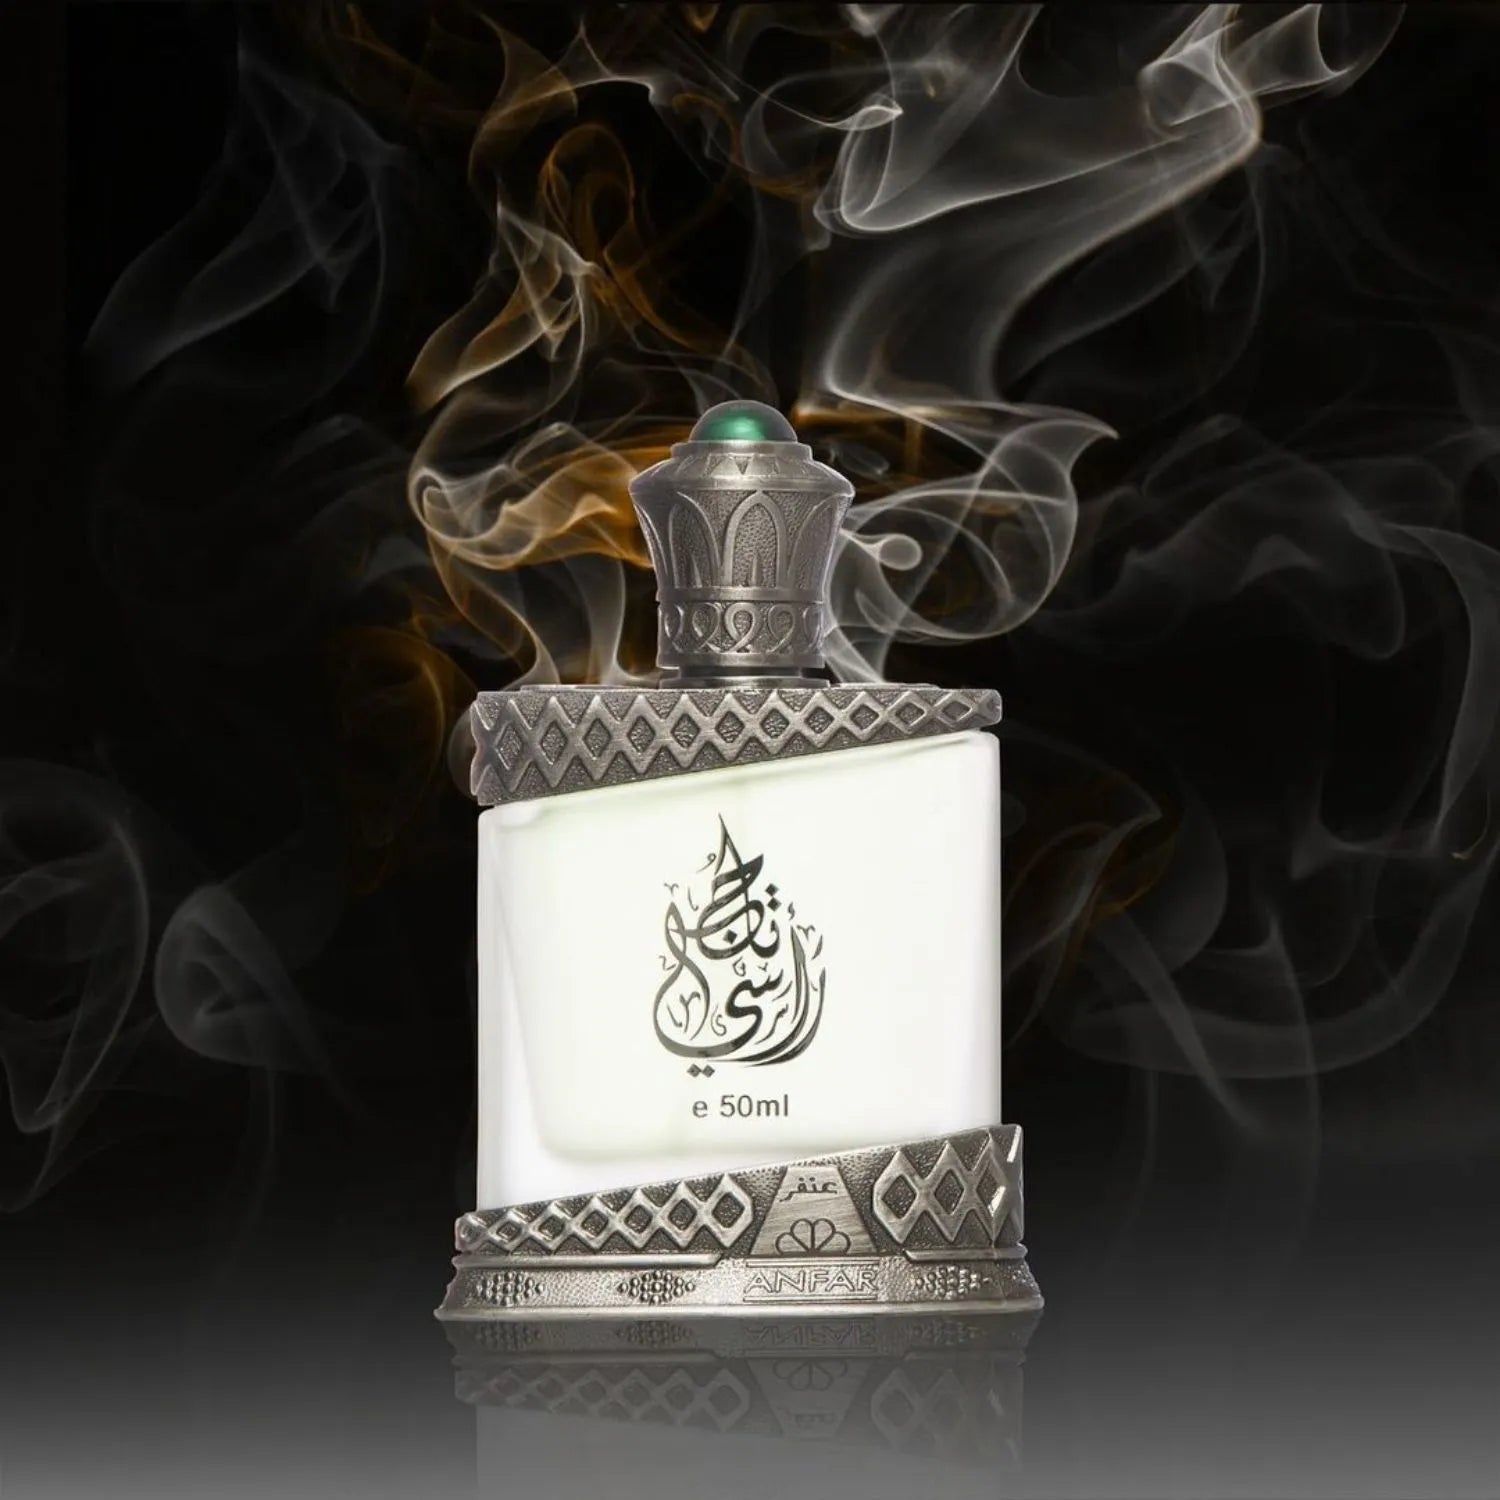 Taaju Rasi Perfume Image